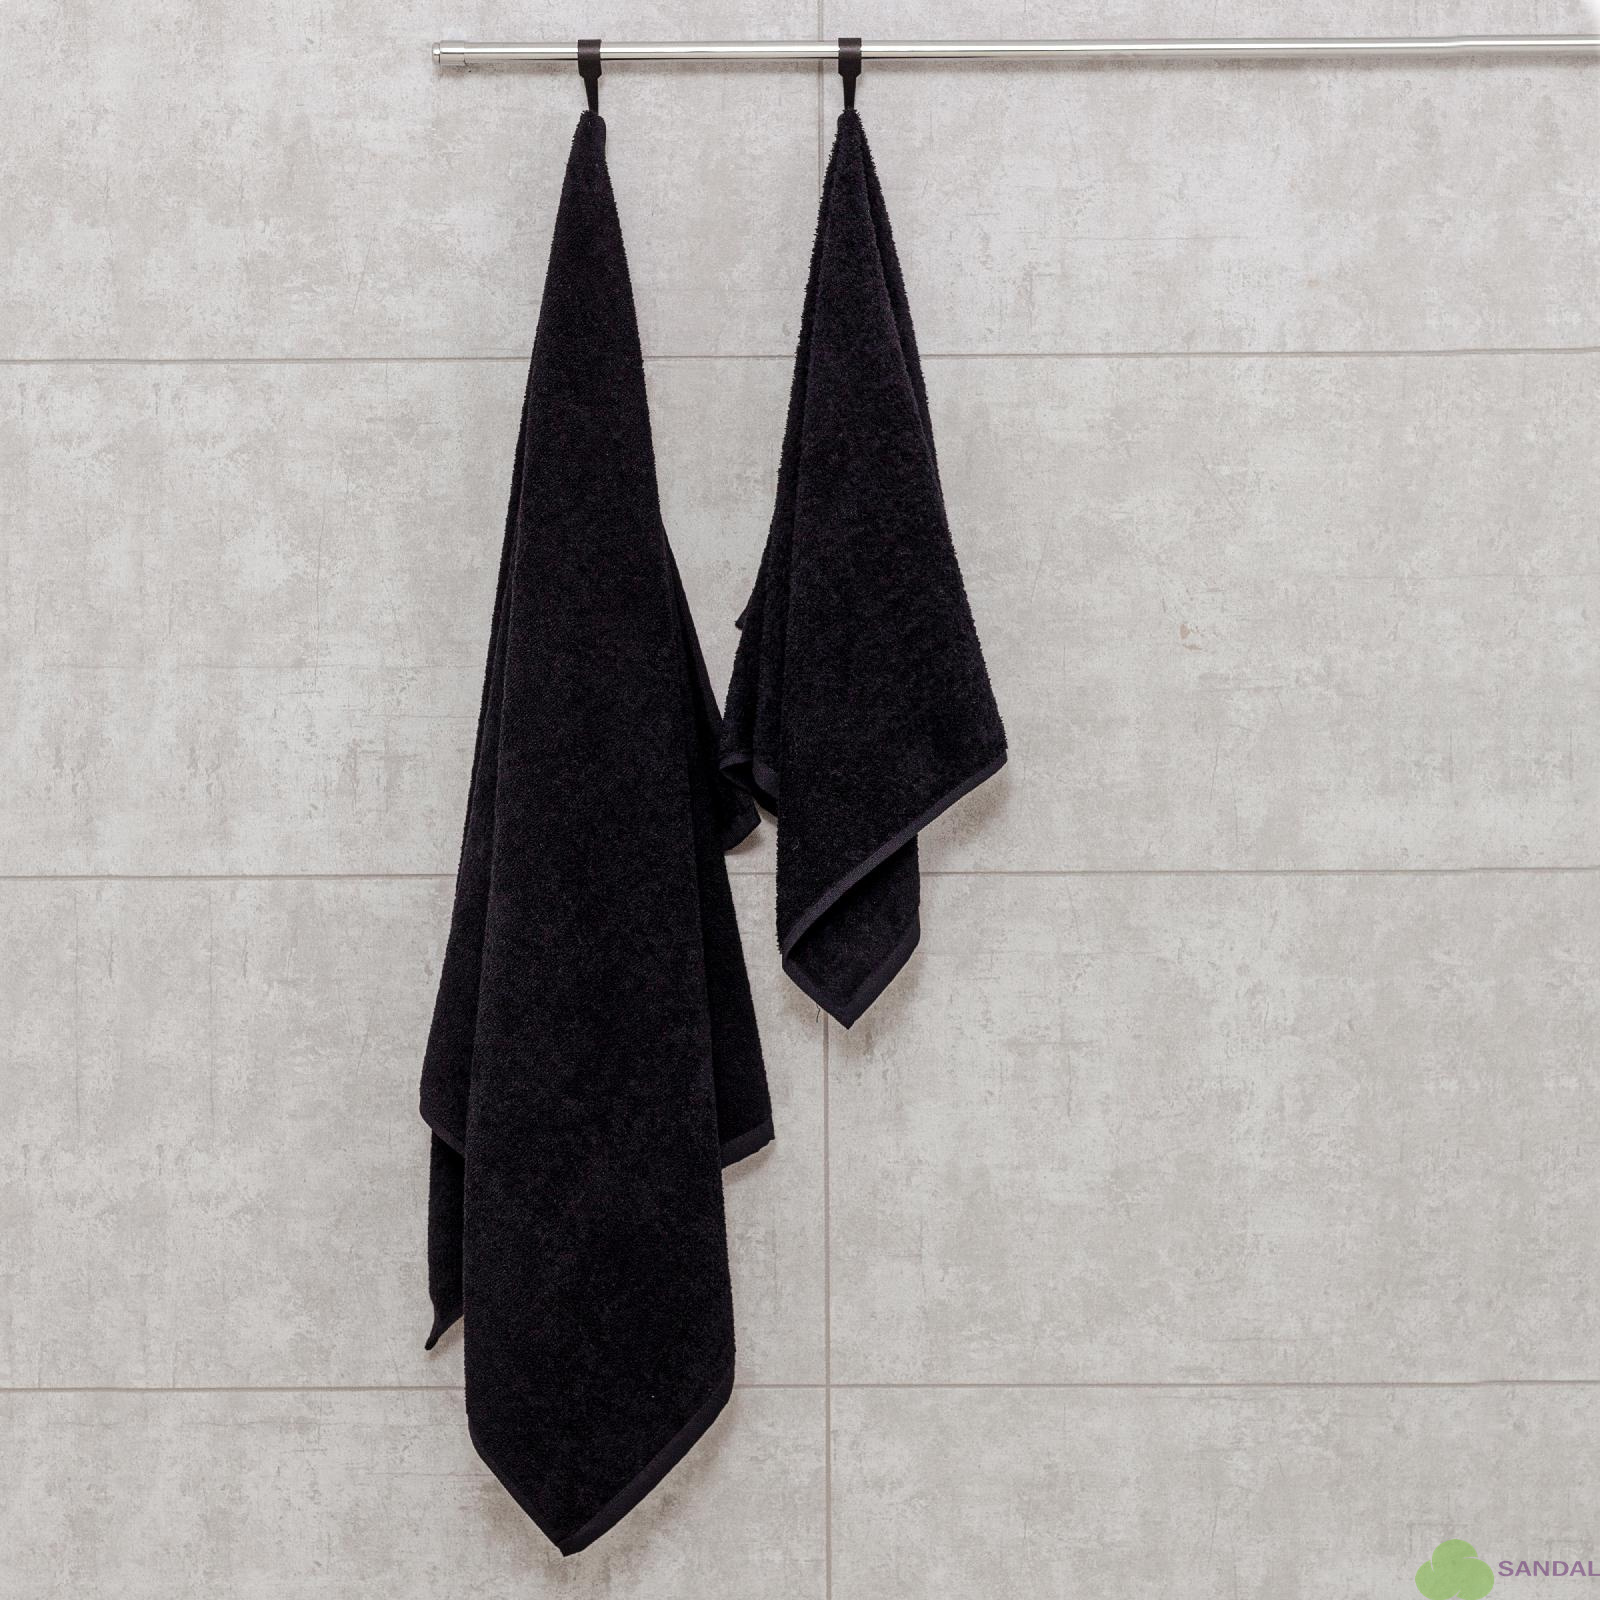 Набор махровых полотенец "люкс" из 2-х штук (50*90, 70*140 см.). Цвет - черный.